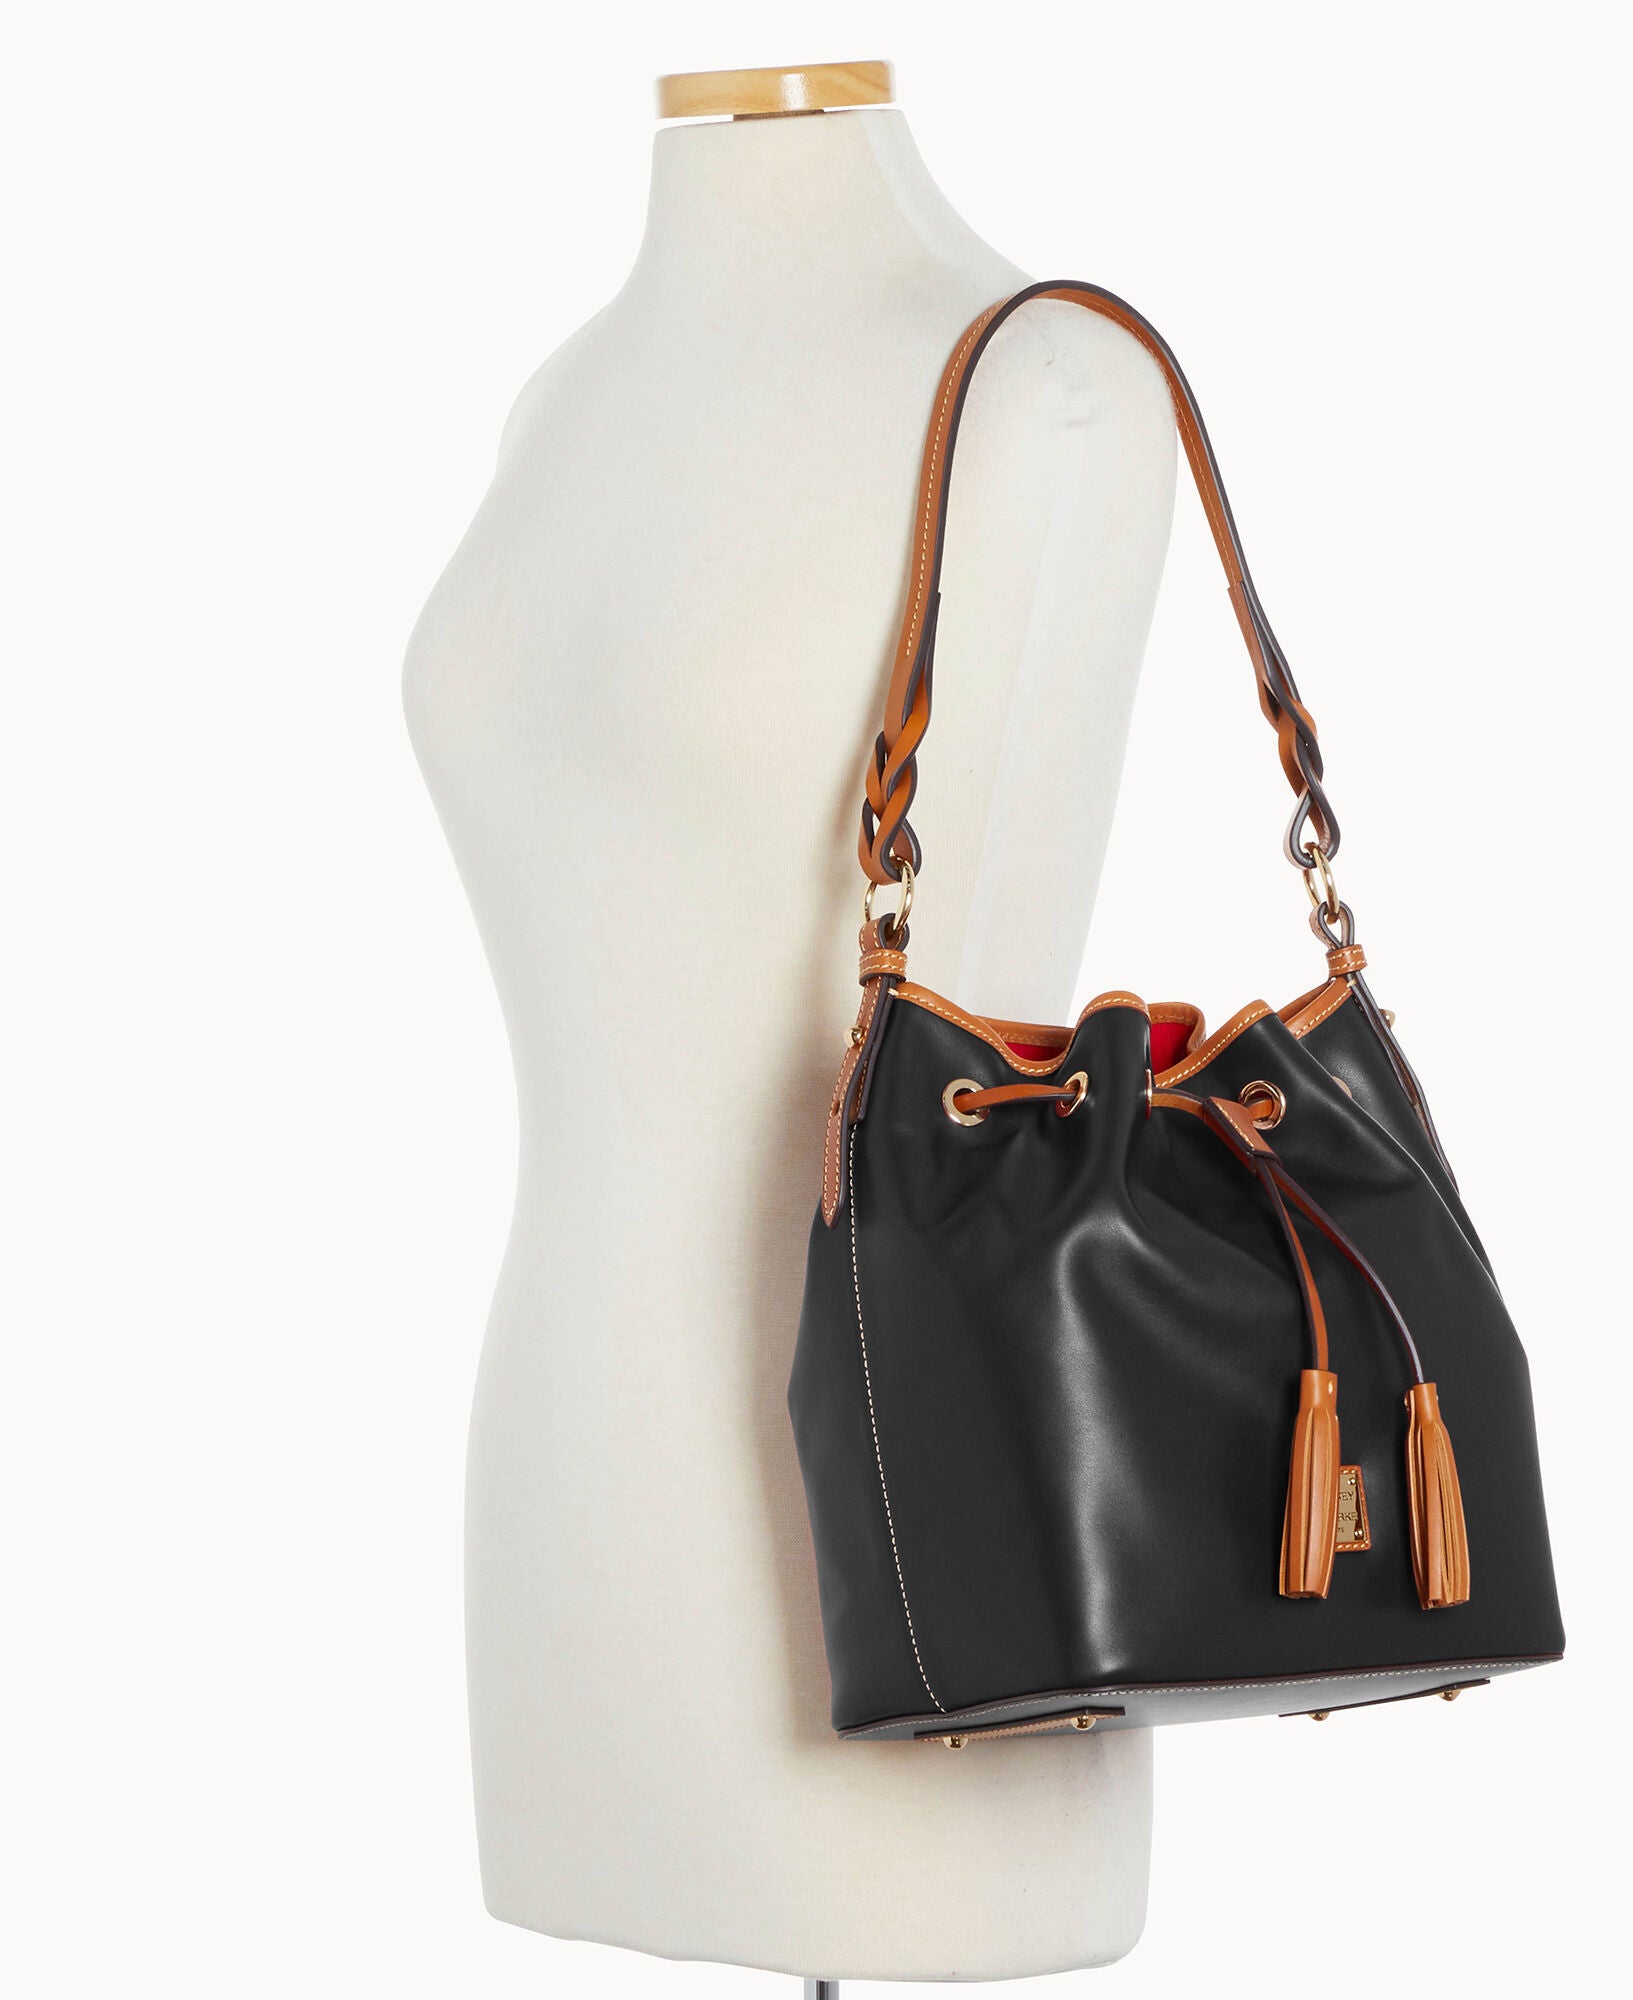 Dooney & Bourke Women's Shoulder Bags - Black